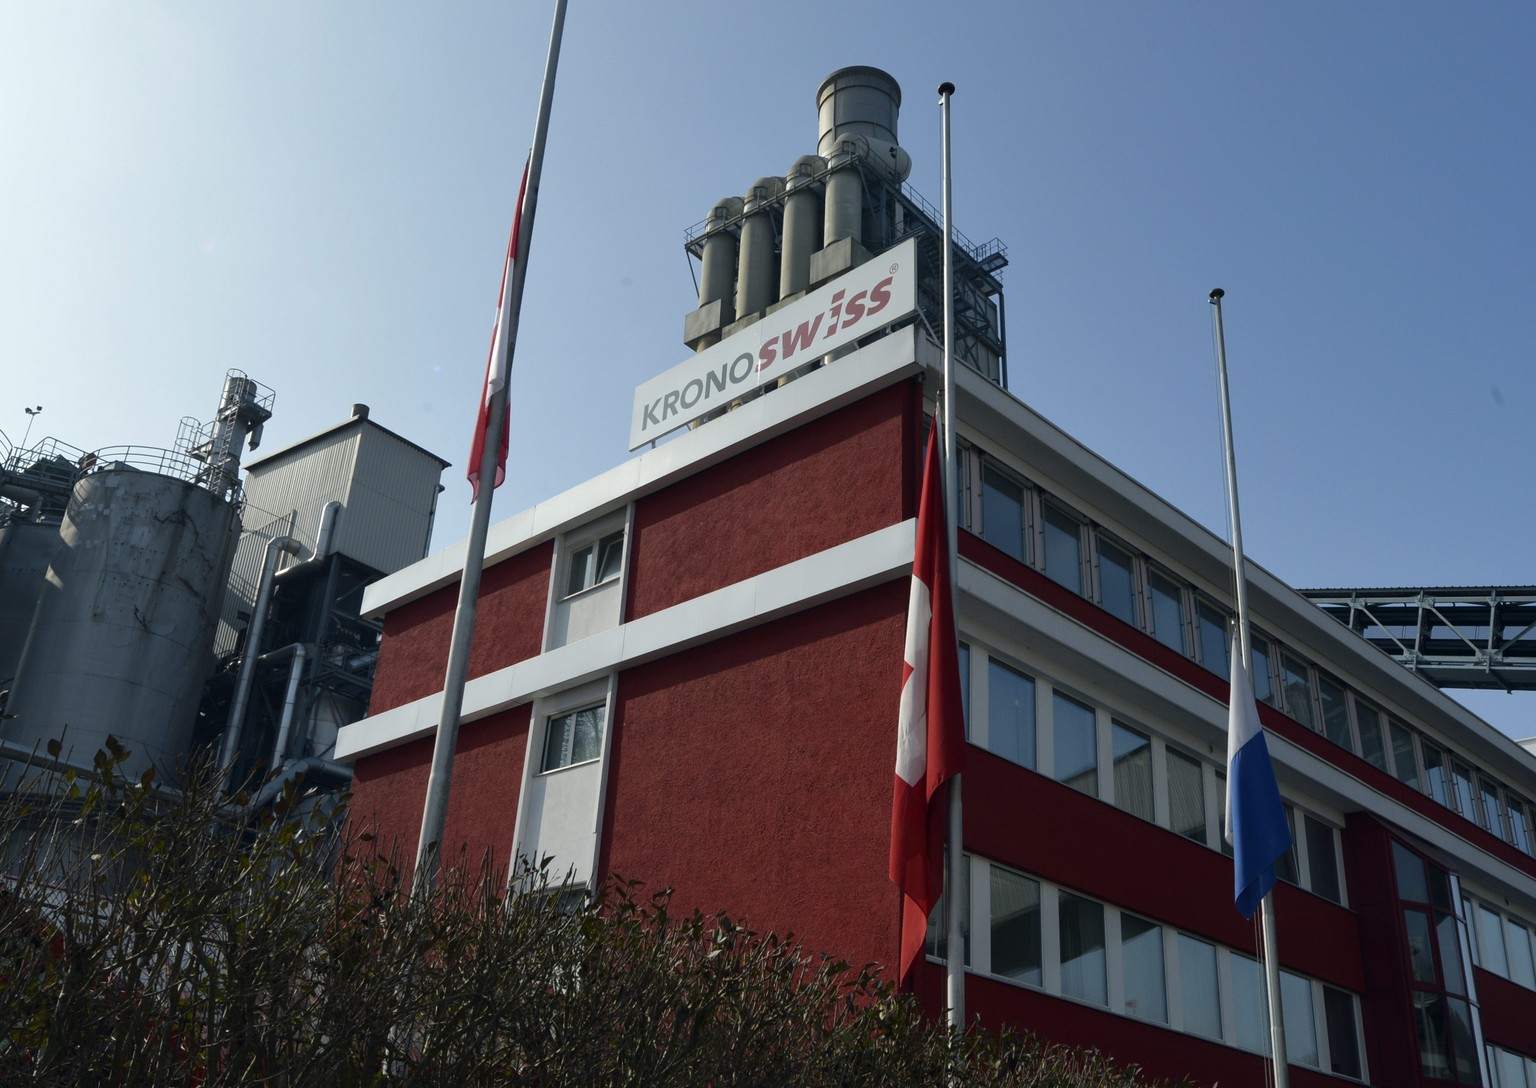 Am 27. Februar 2013 tötete der Täter in der Fabrik von Kronospan in Menznau fünf Menschen.